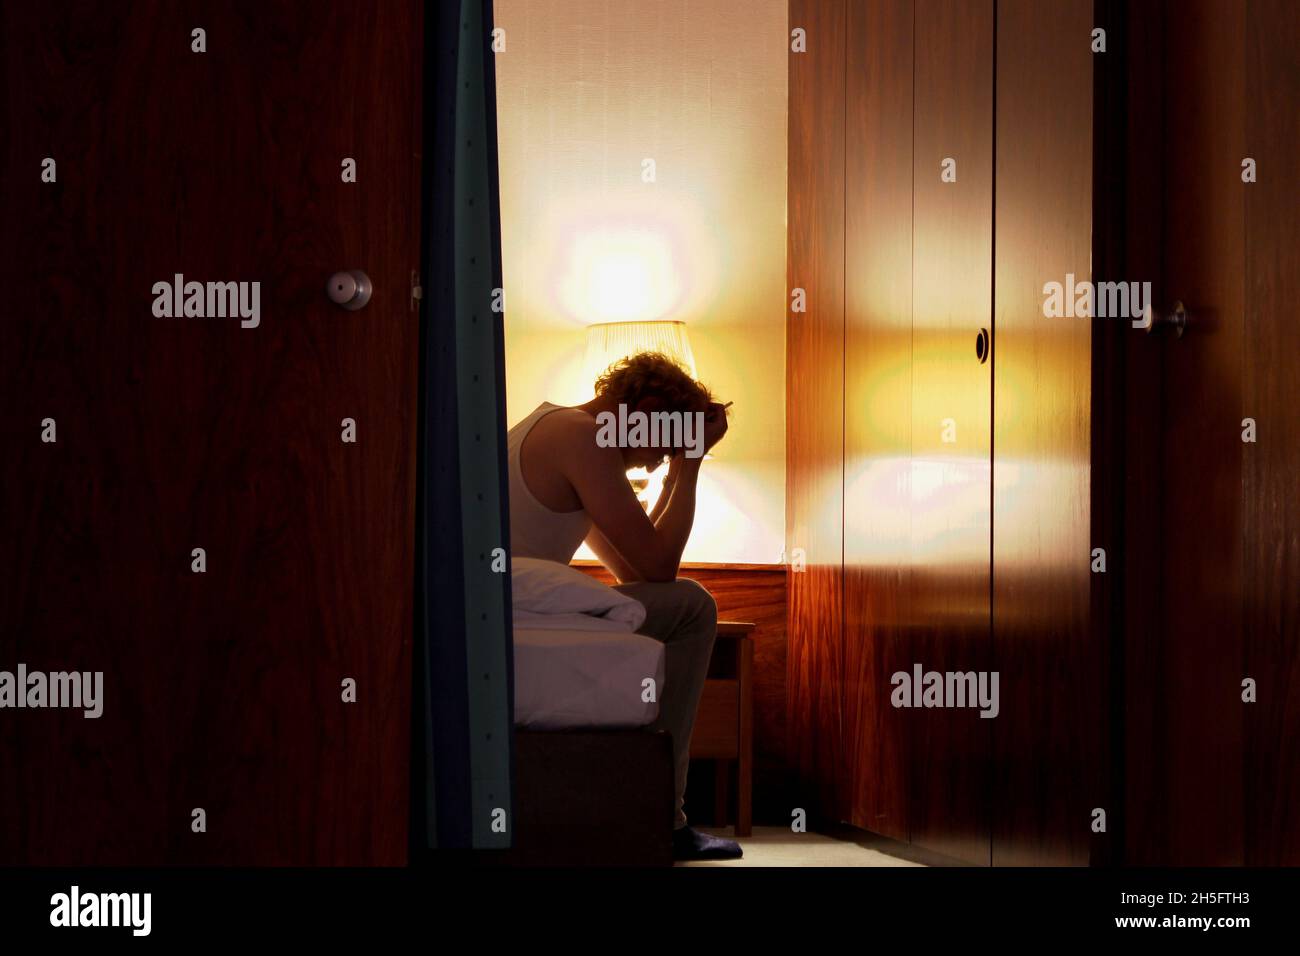 Ein Mann in einem weißen Unterhemd sitzt alleine im Hotelzimmer, den Kopf gesenkt, beide Hände vor der Stirn, mit einer Zigarette in der hand. Foto Stock